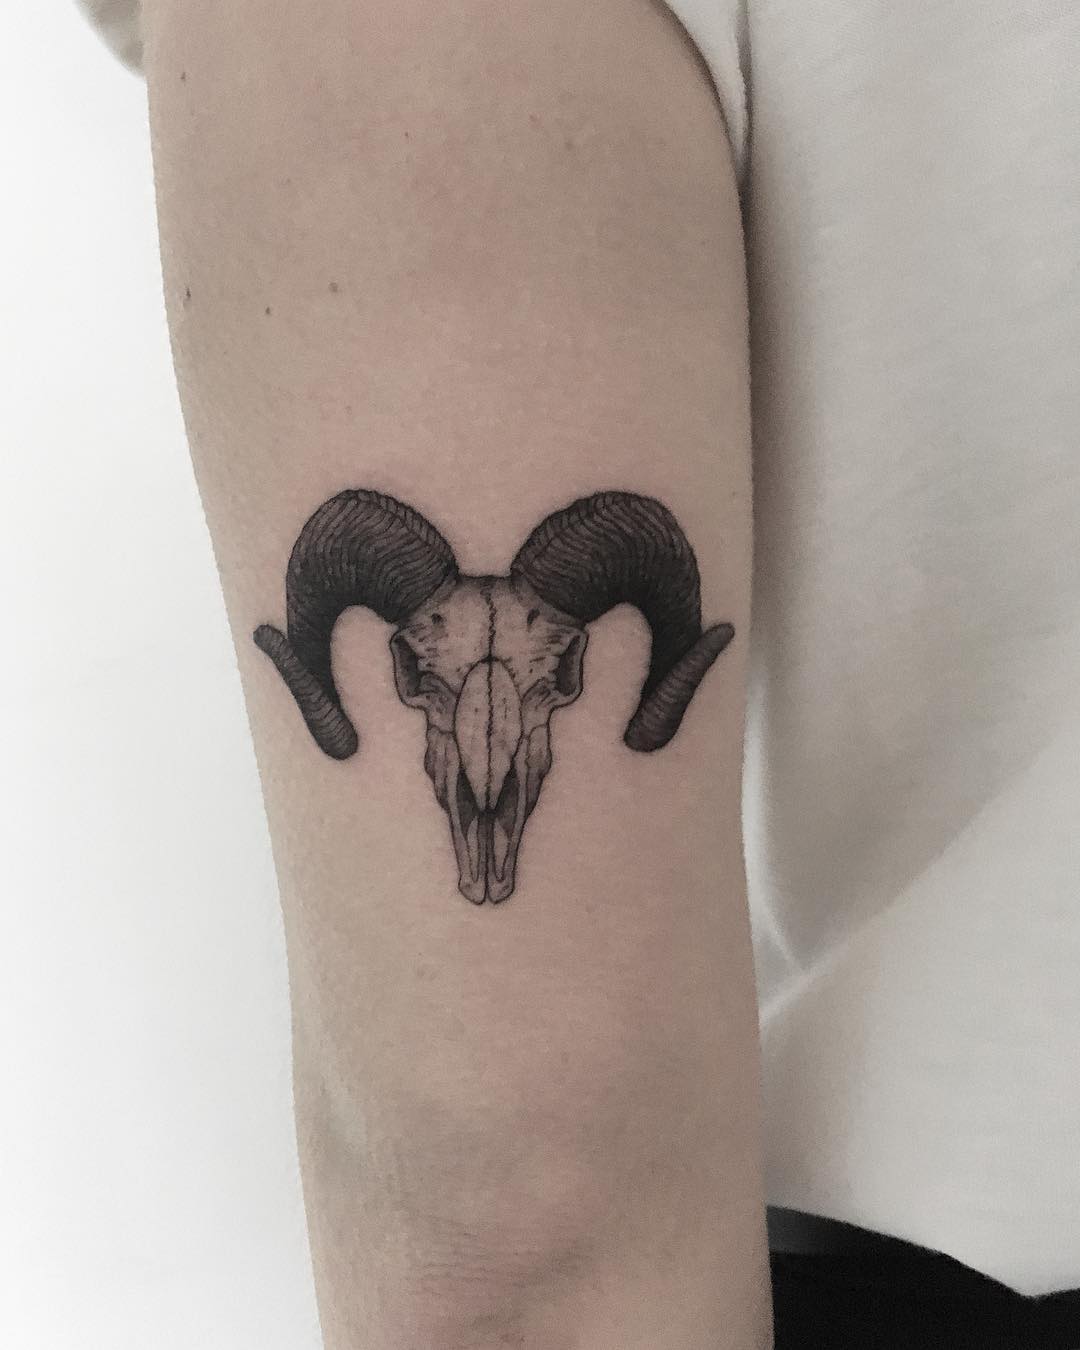 Goat skull by tattooist Spence @zz tattoo - Tattoogrid.net.